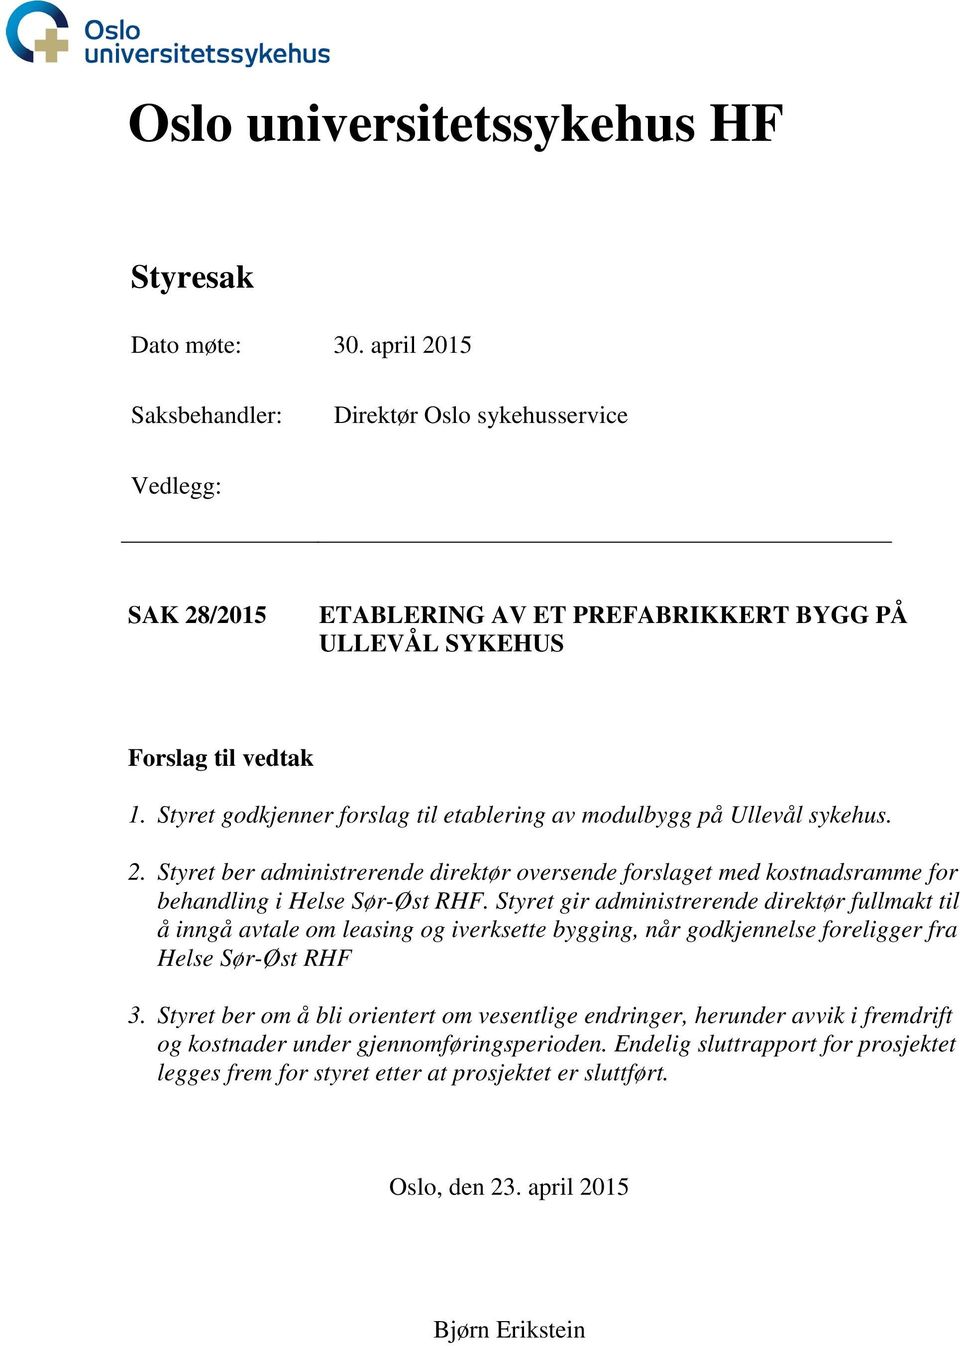 Styret godkjenner forslag til etablering av modulbygg på Ullevål sykehus. 2. Styret ber administrerende direktør oversende forslaget med kostnadsramme for behandling i Helse Sør-Øst RHF.